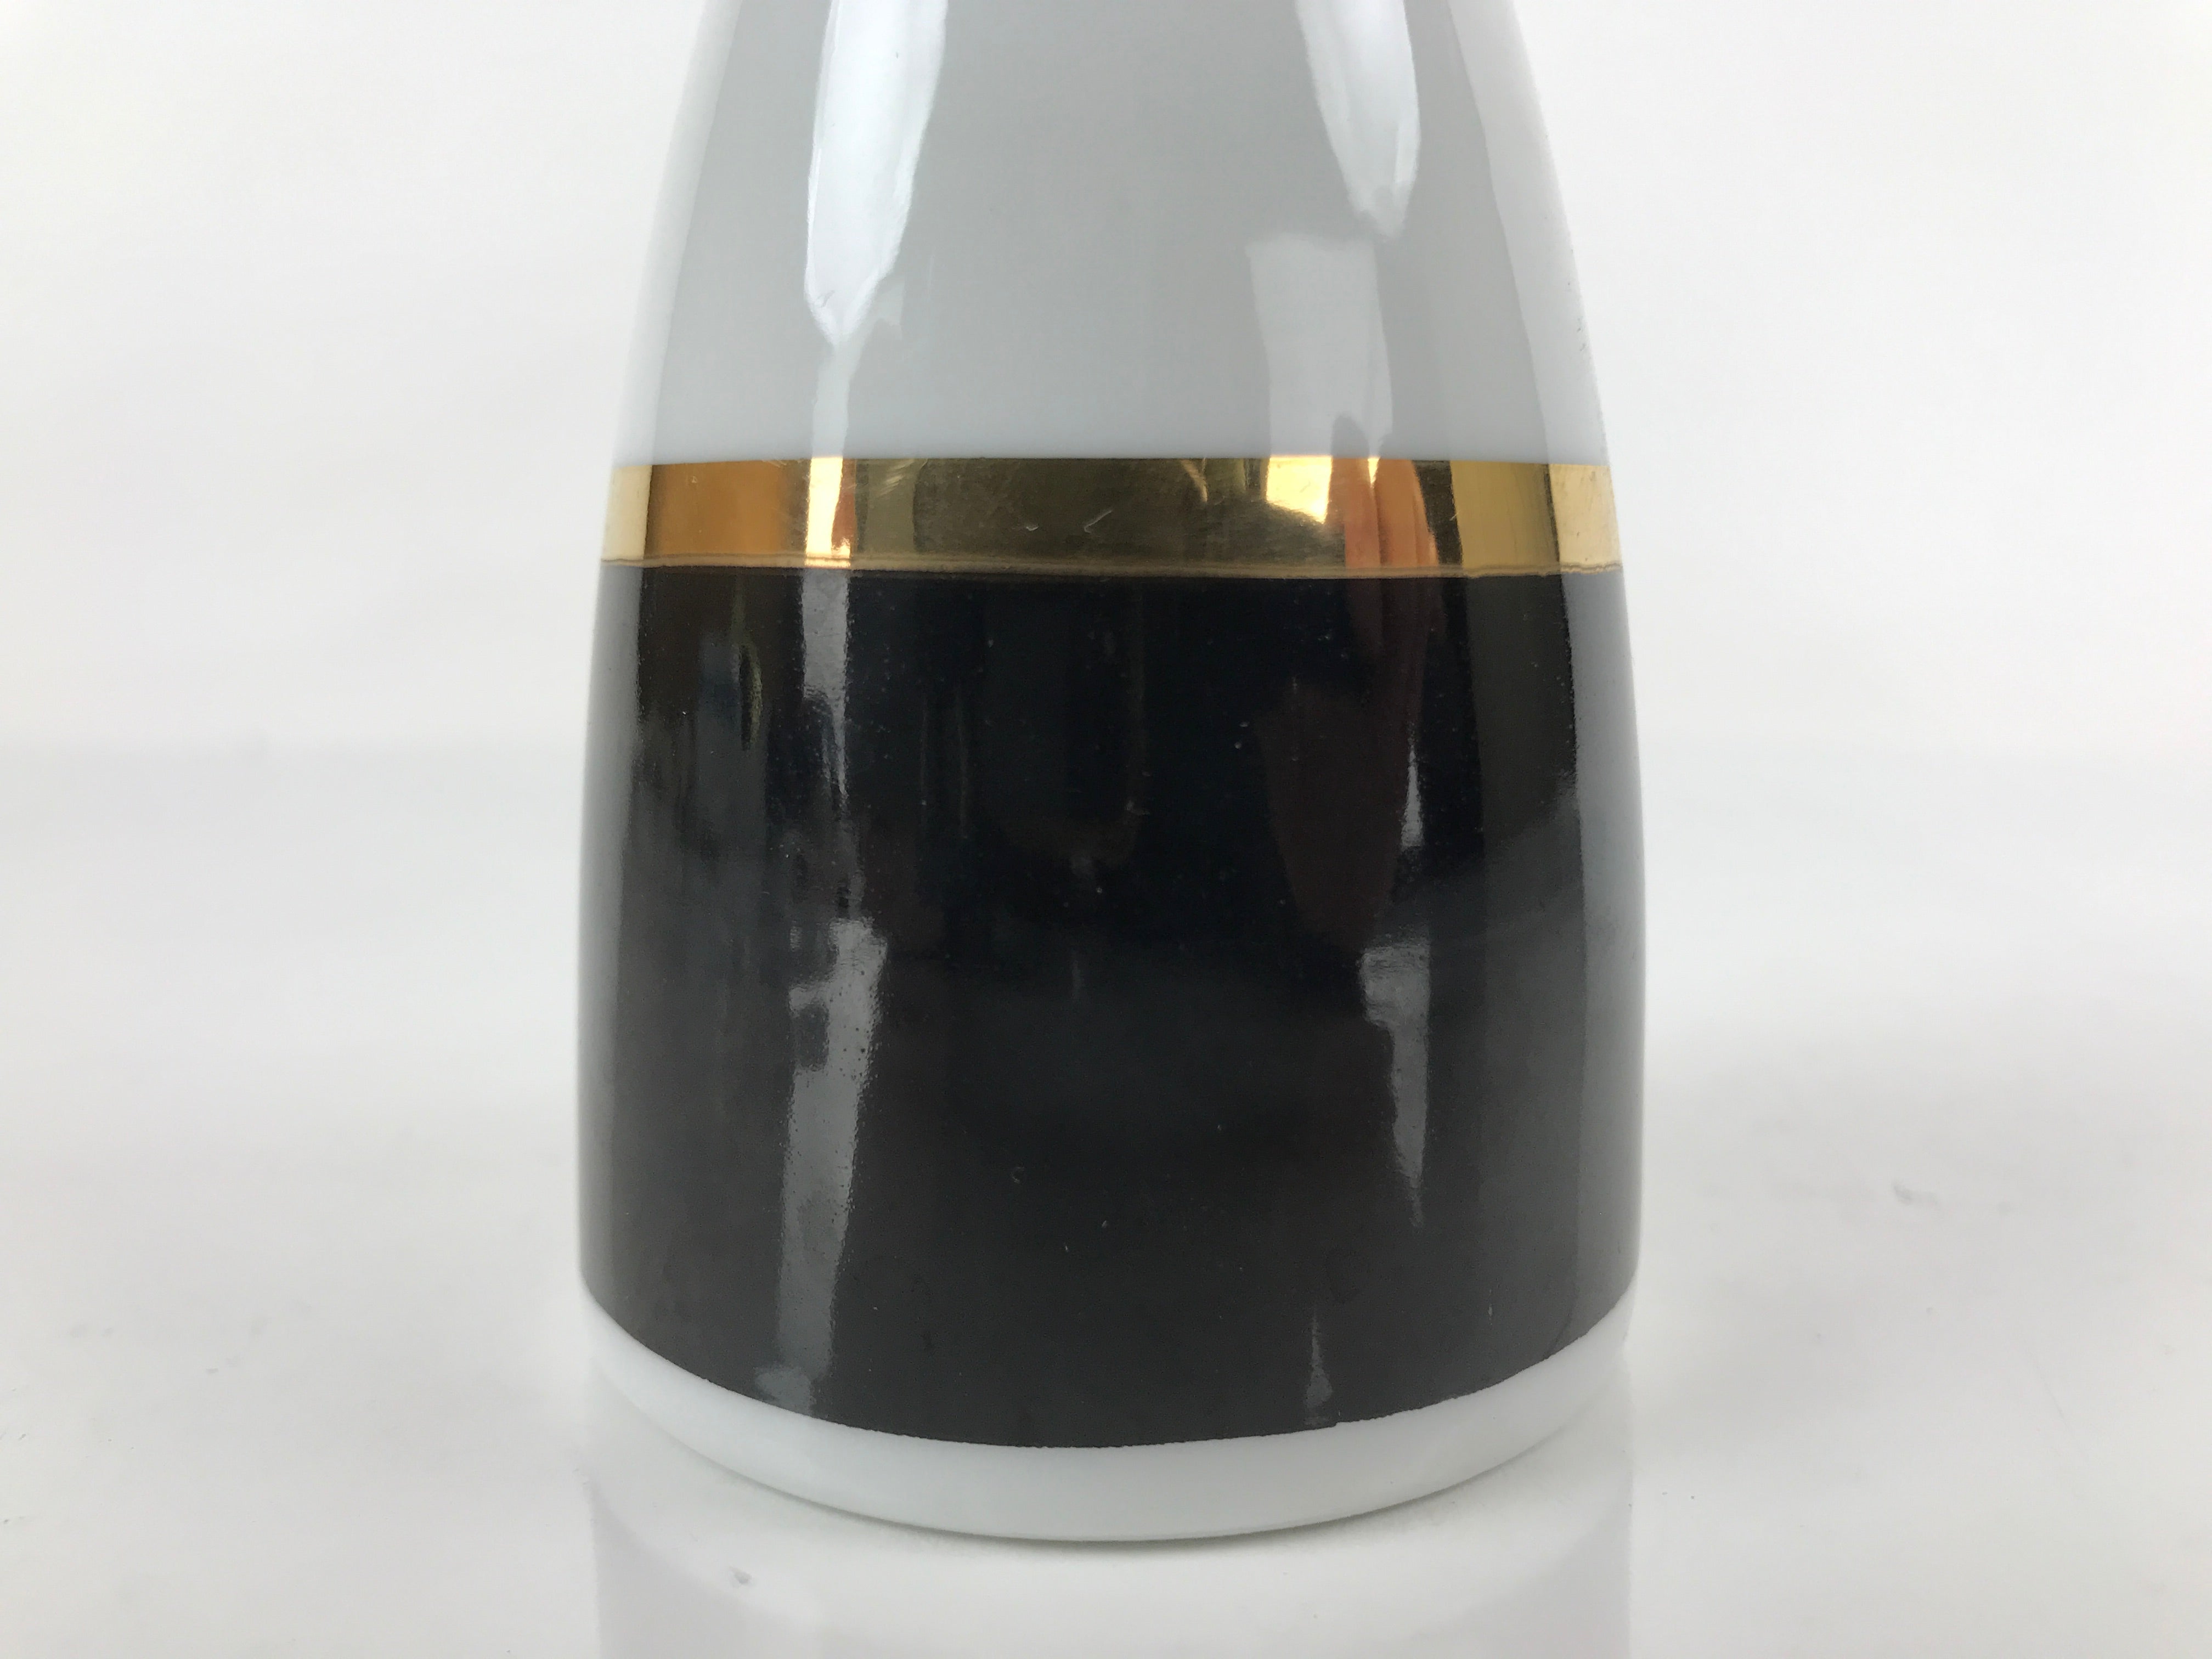 Japanese Porcelain Sake Bottle Tokkuri Vtg Ichi-Go Simple Black Gold White TS639